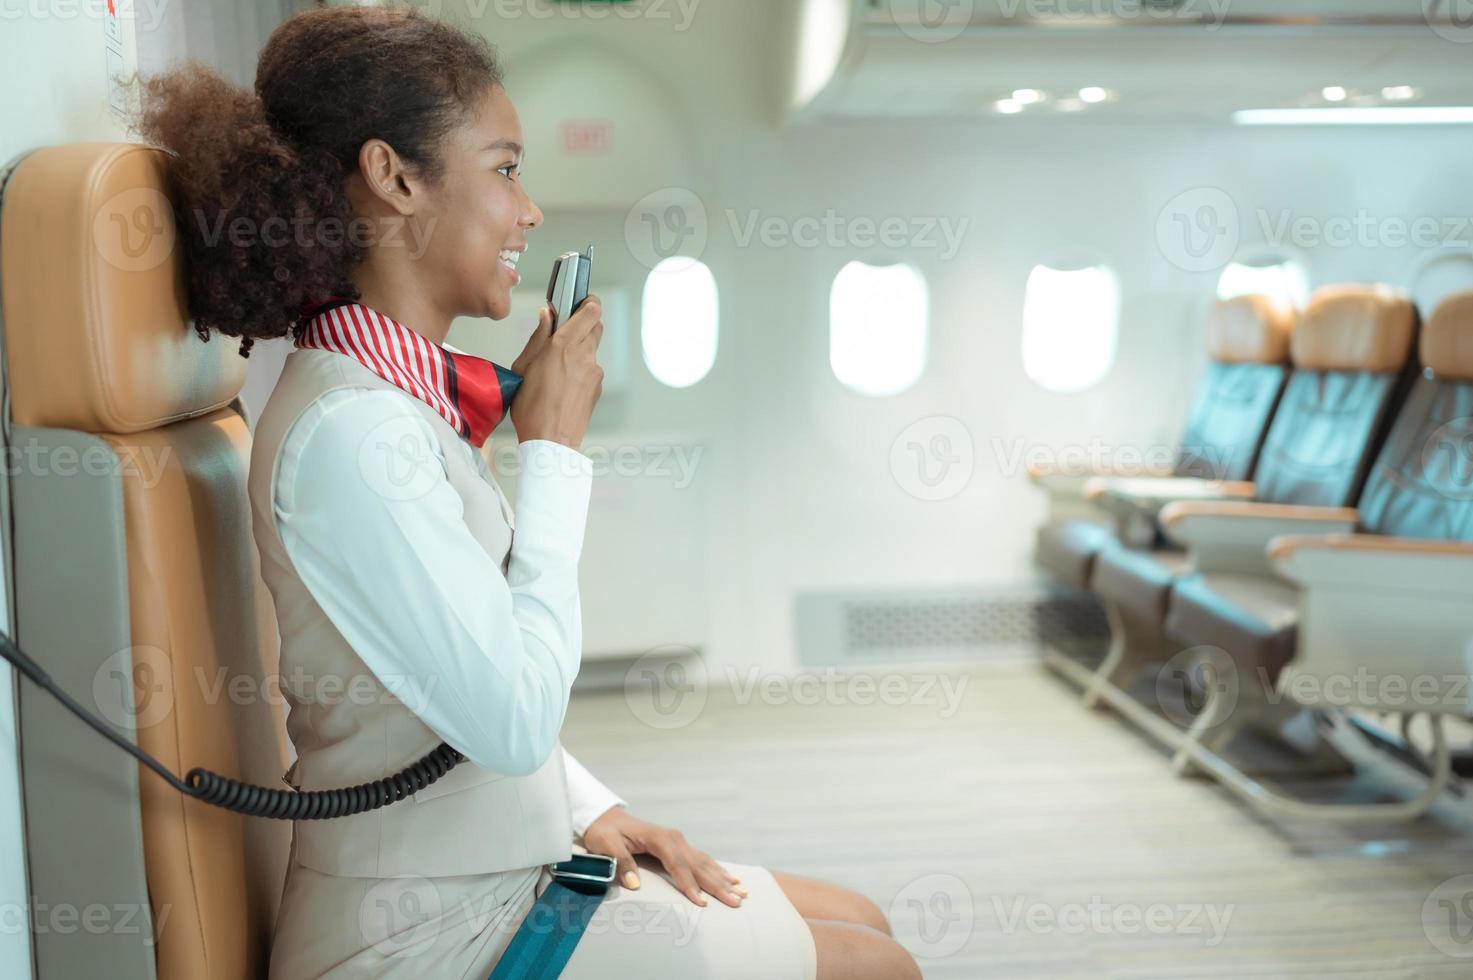 Flug Begleiter Sprechen durch ein Lautsprecher zu herzlich willkommen Passagiere und geben Rat auf Reisen durch Flugzeug foto